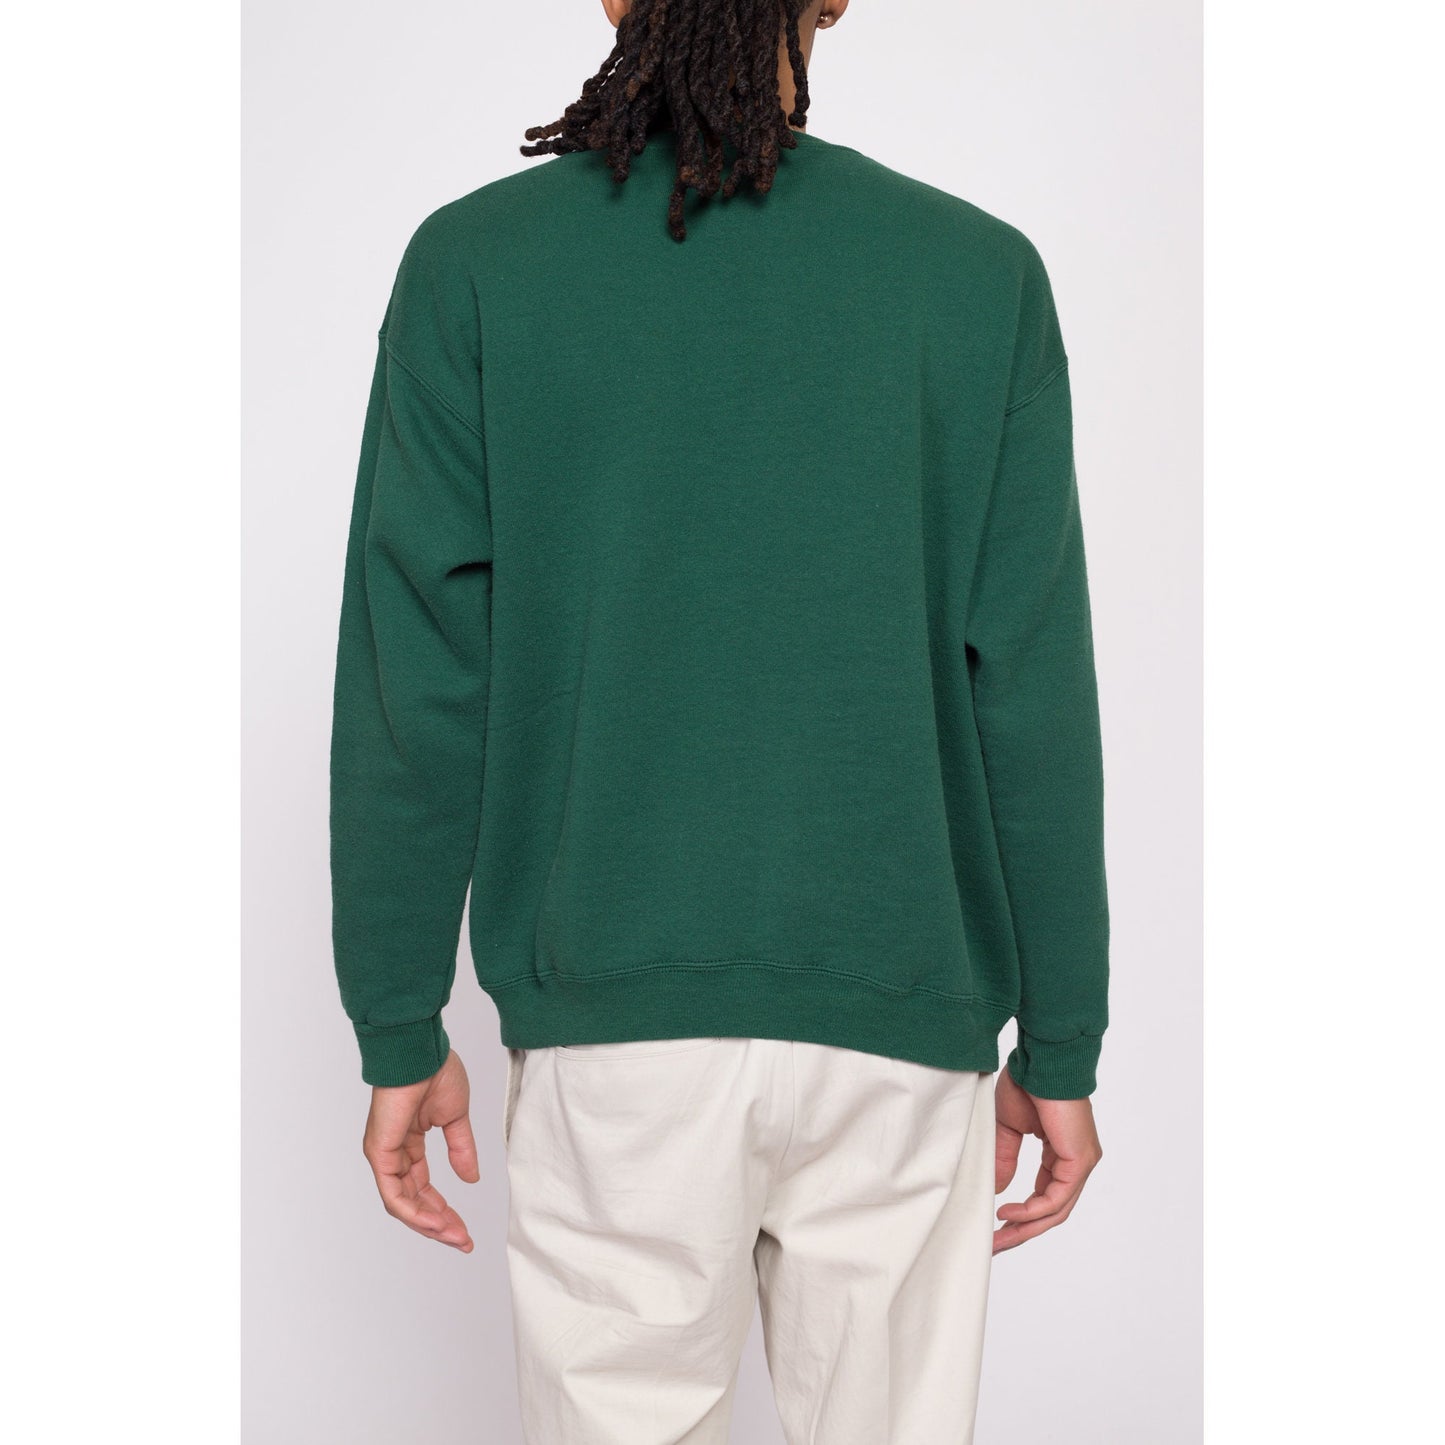 90s Lee Green Crewneck Sweatshirt - Men's Large